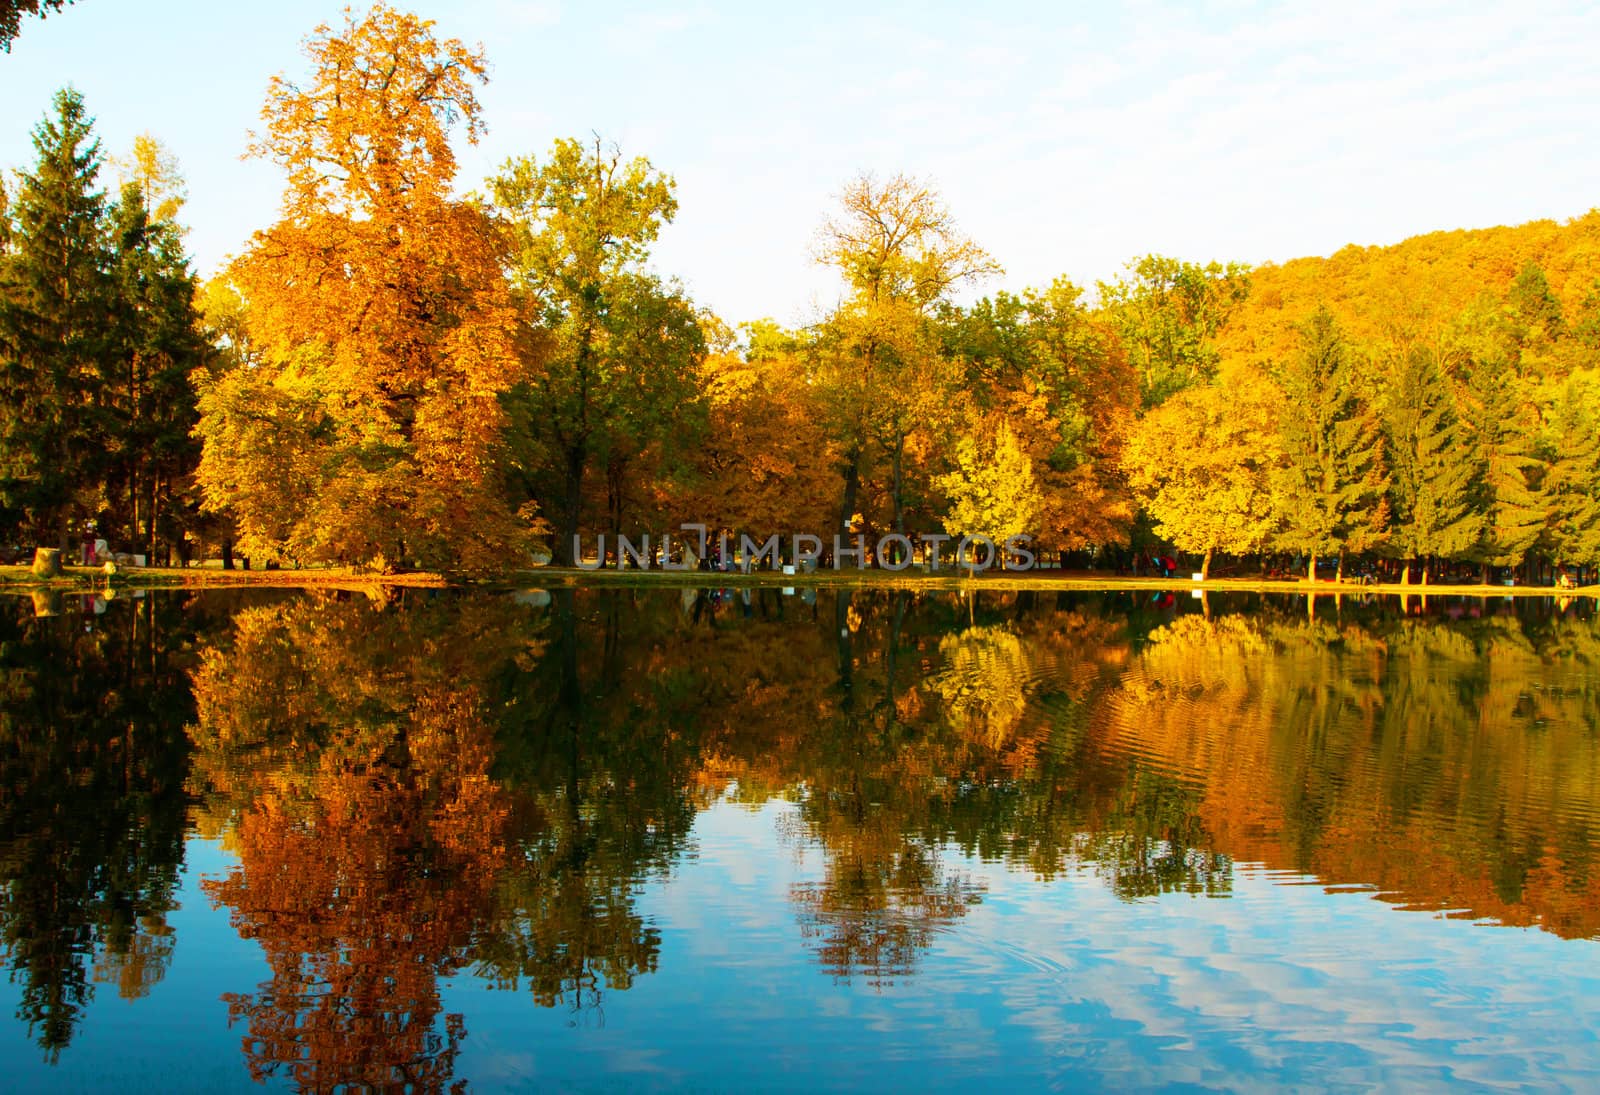 Autumn landscape by NagyDodo